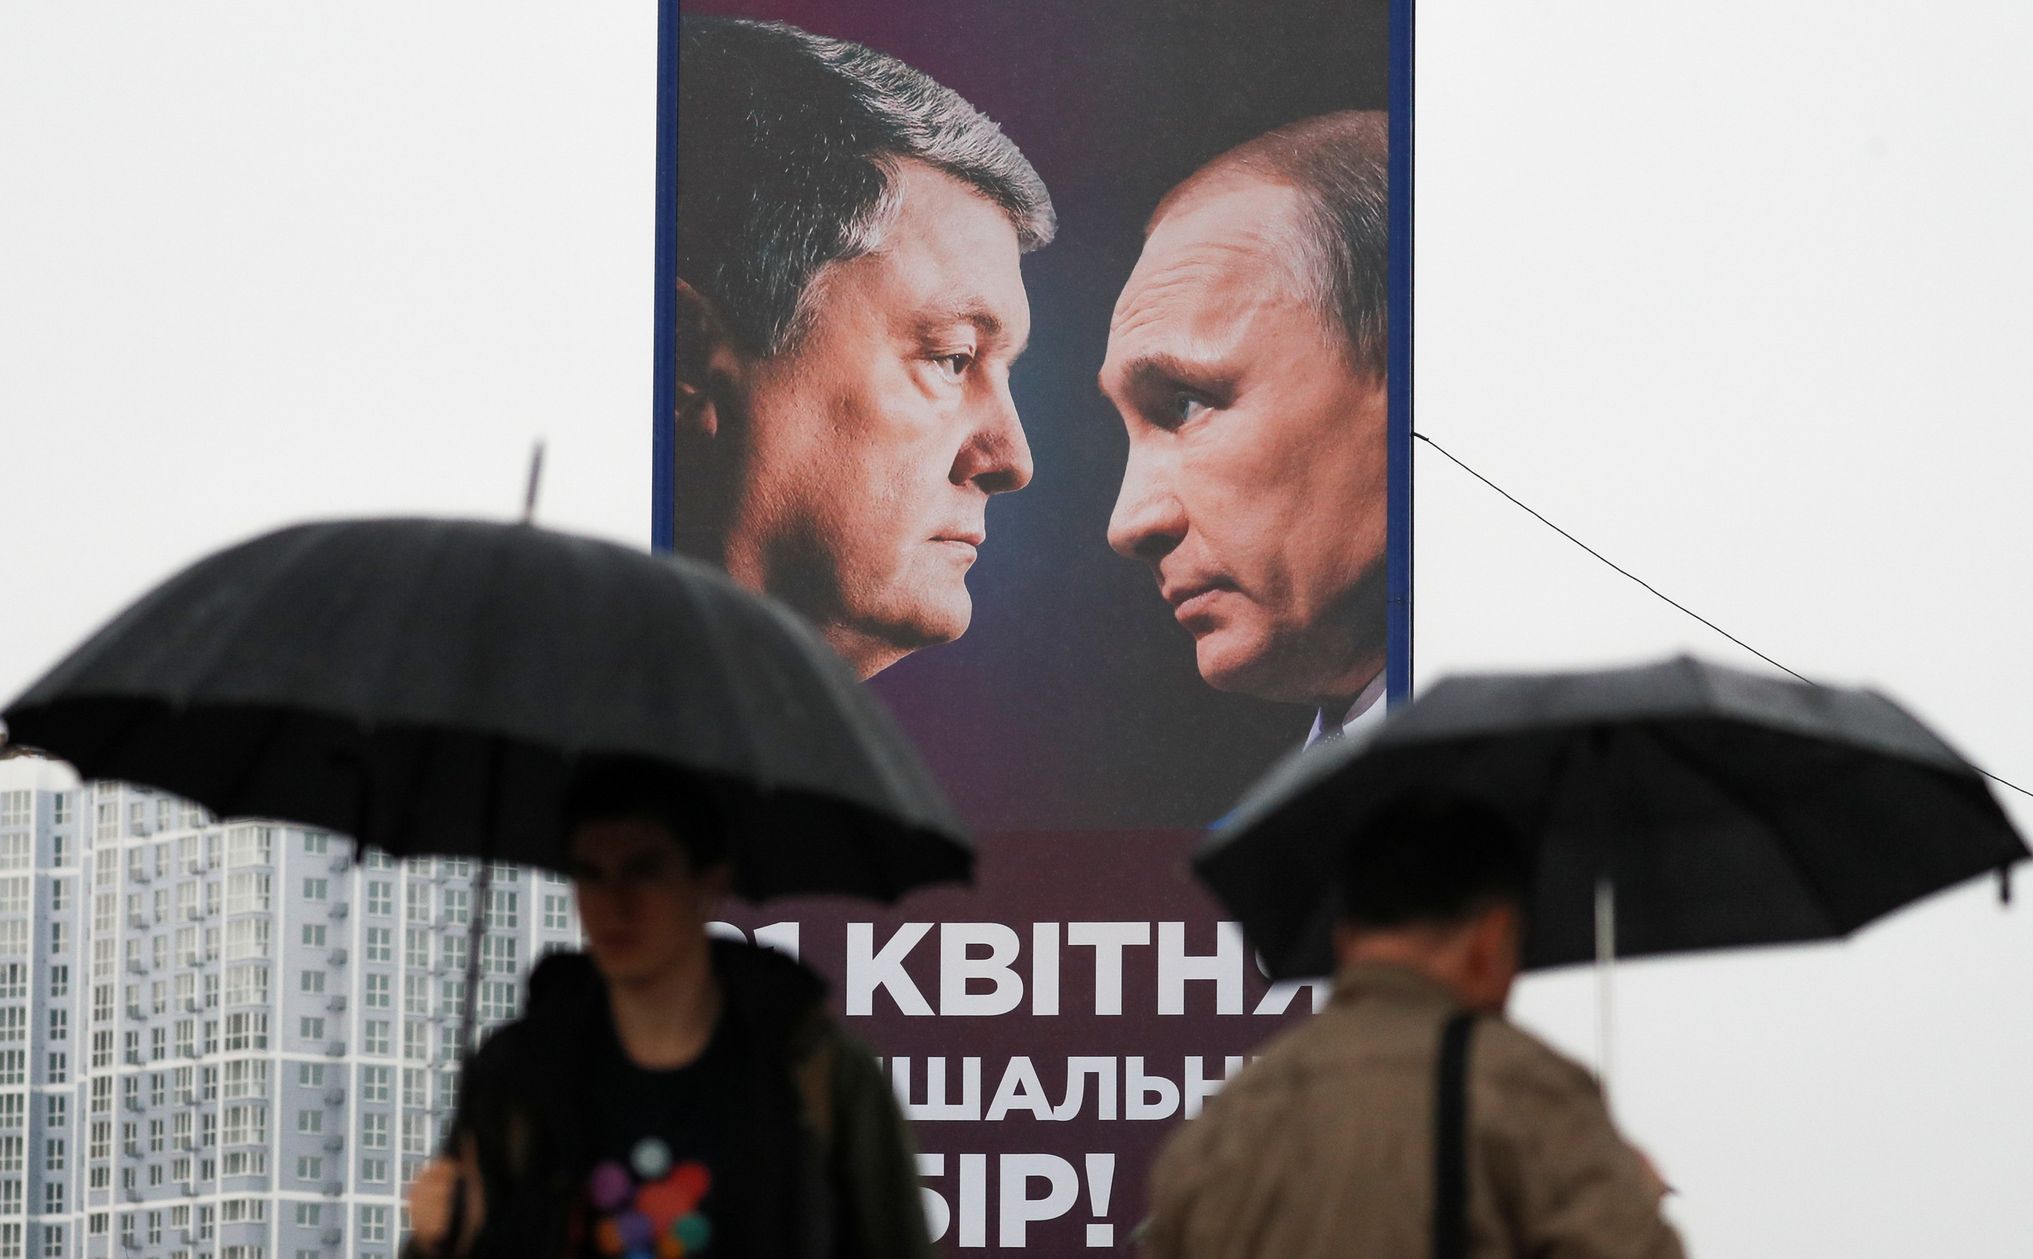 Ukrajina prezidentské volby 2019 kontroverzní plakát